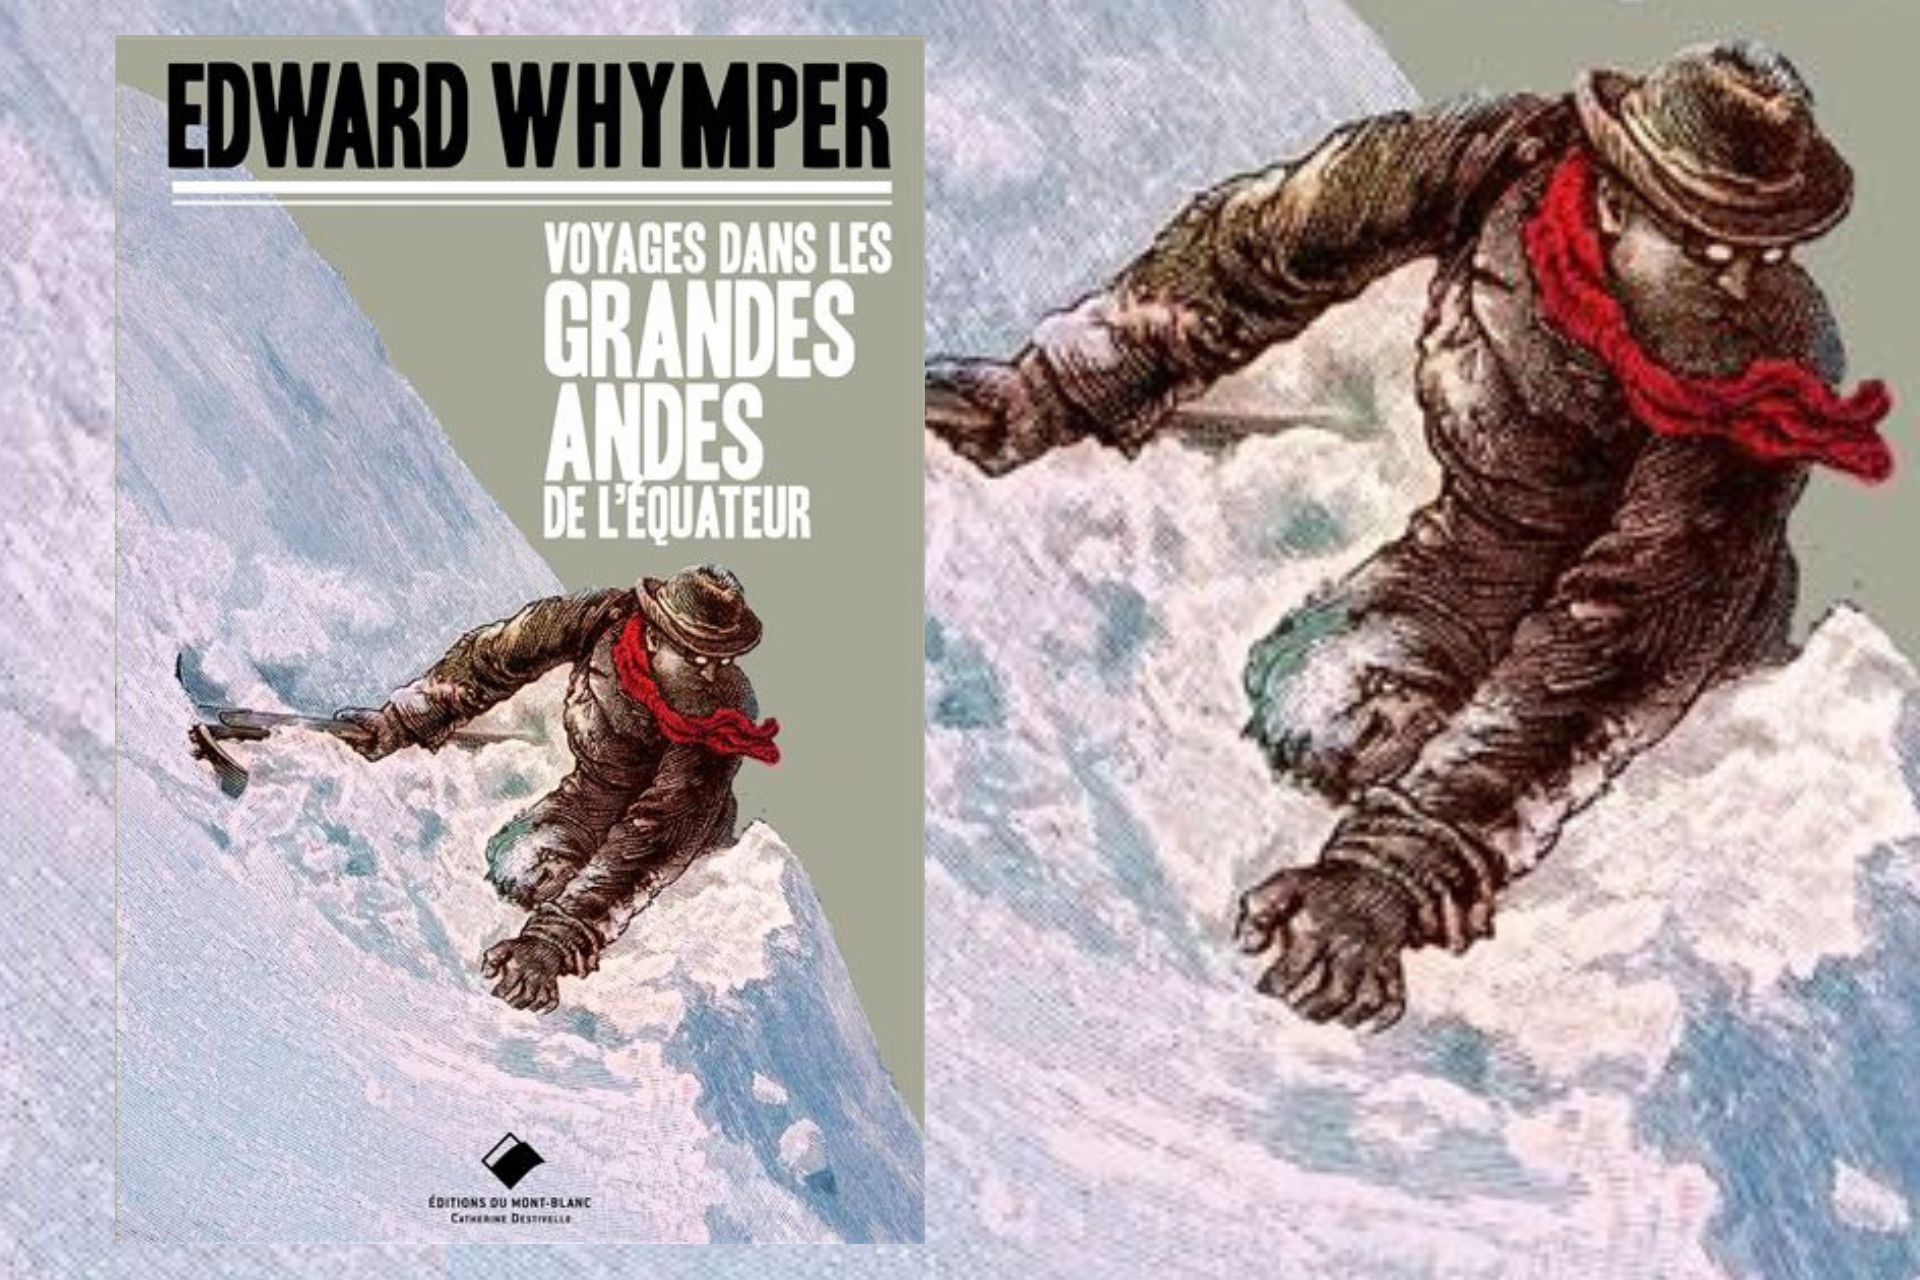 Edward whimper voyages dans les grandes Andes de l'équateur